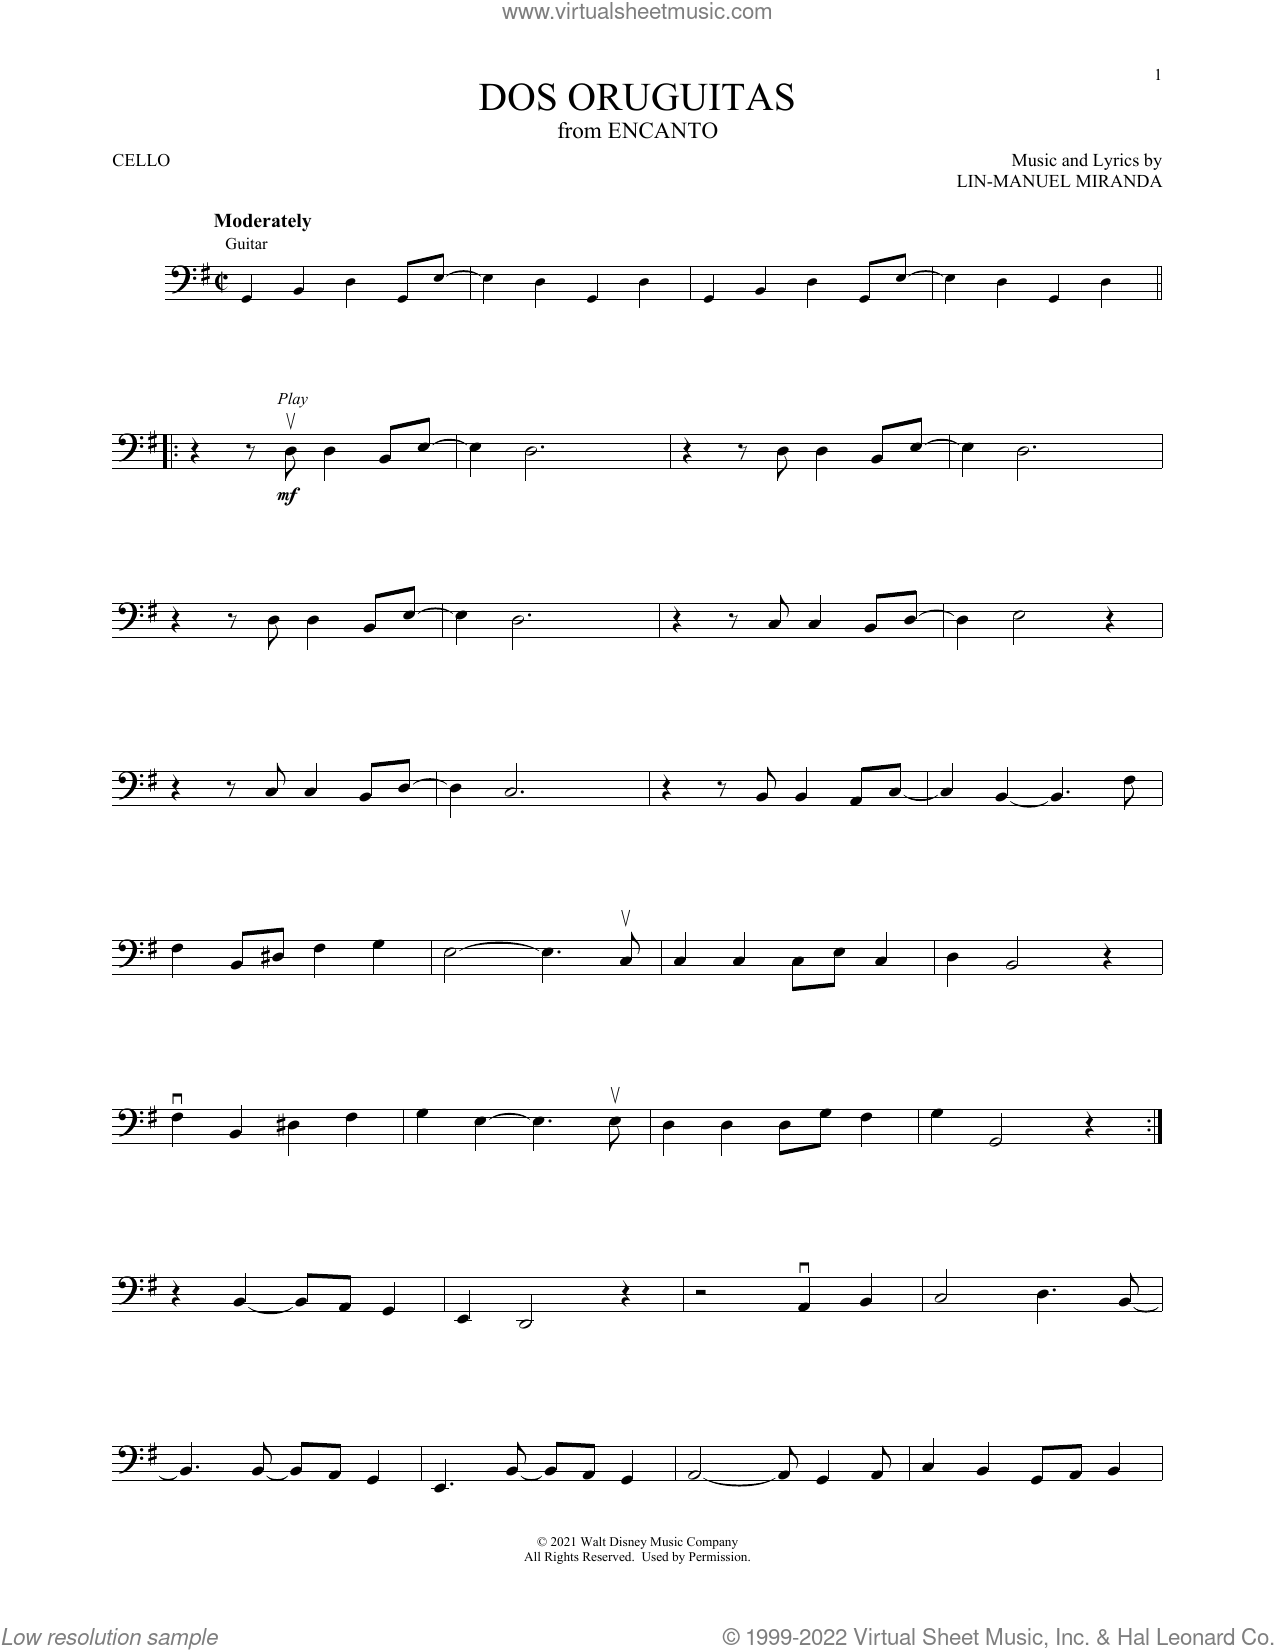 Miranda - Dos Oruguitas (from Encanto) sheet music for cello solo